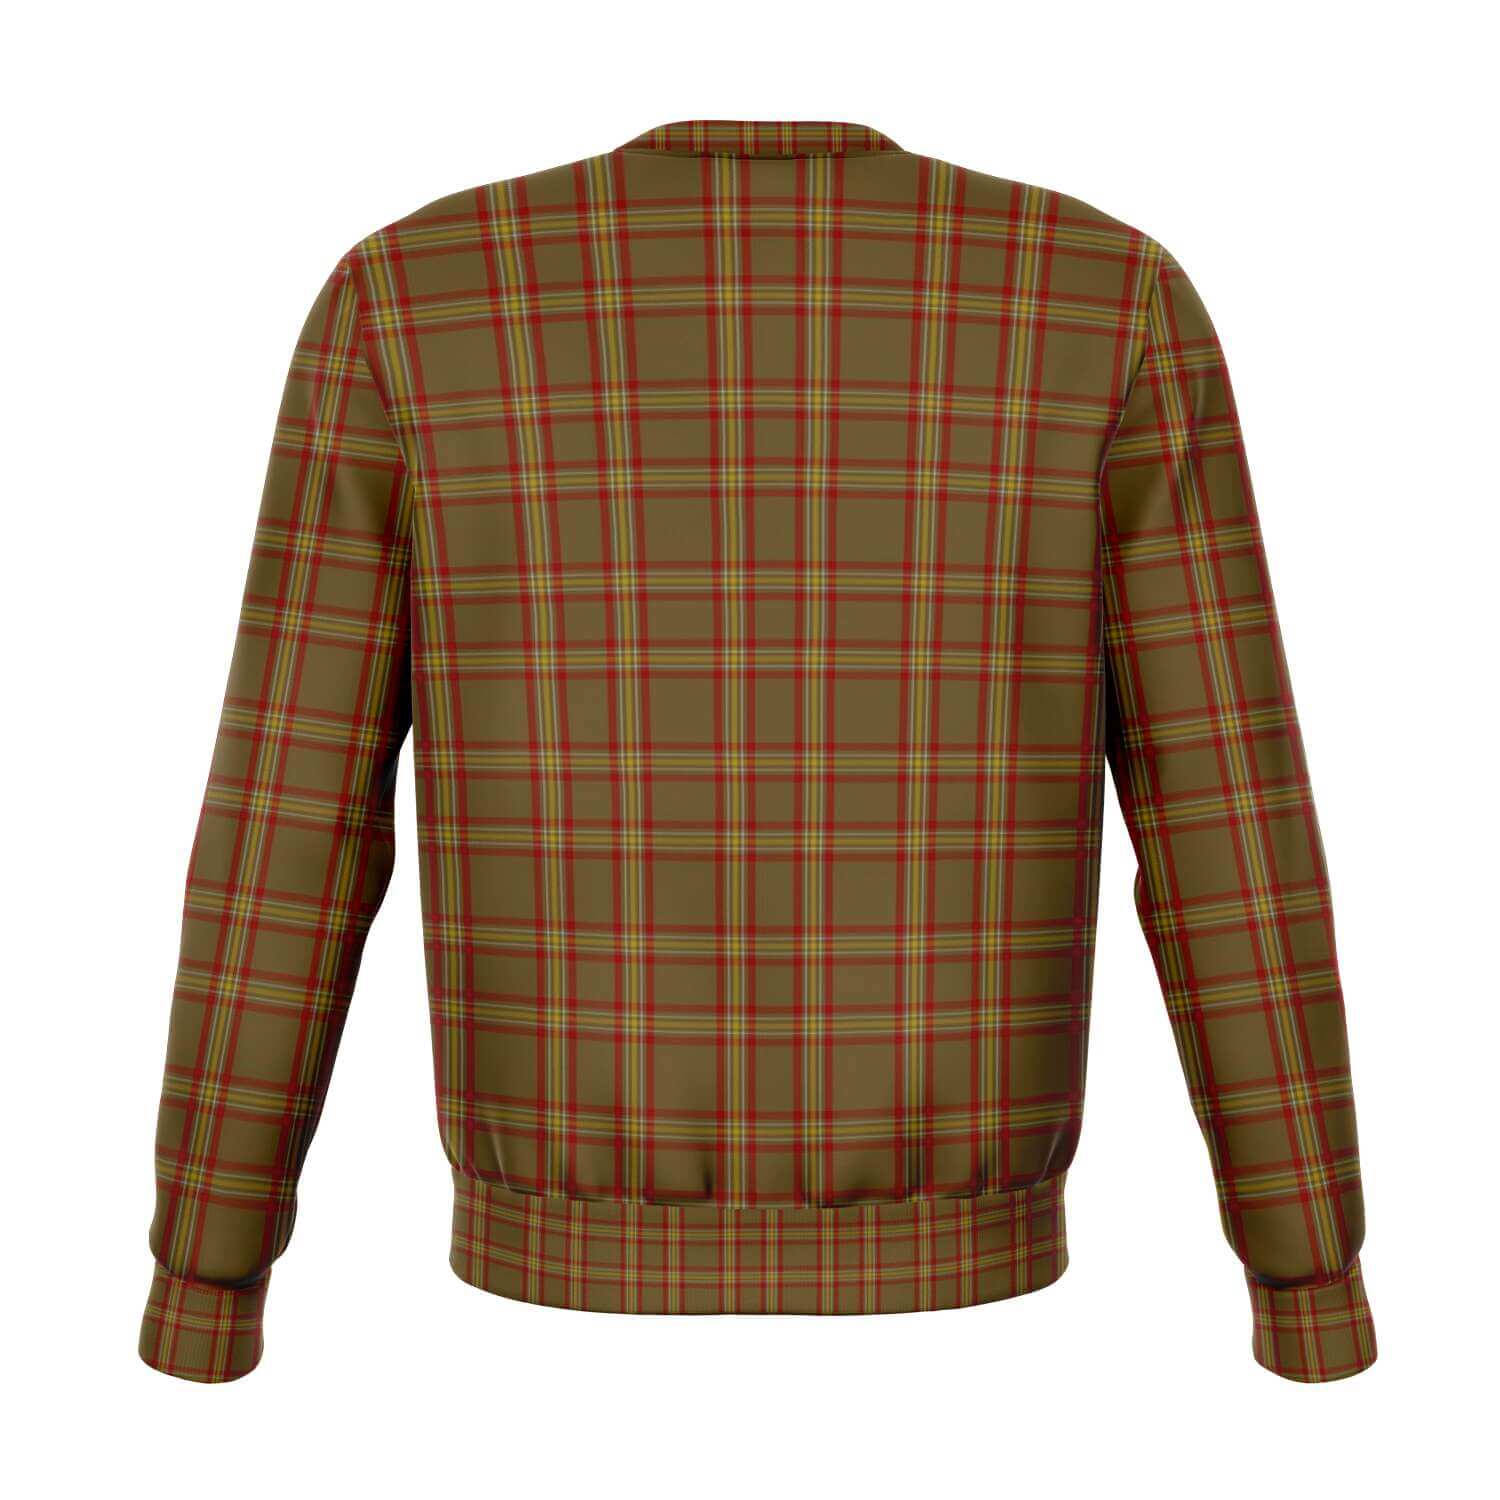 Reid-Tartan-sweatshirt-back